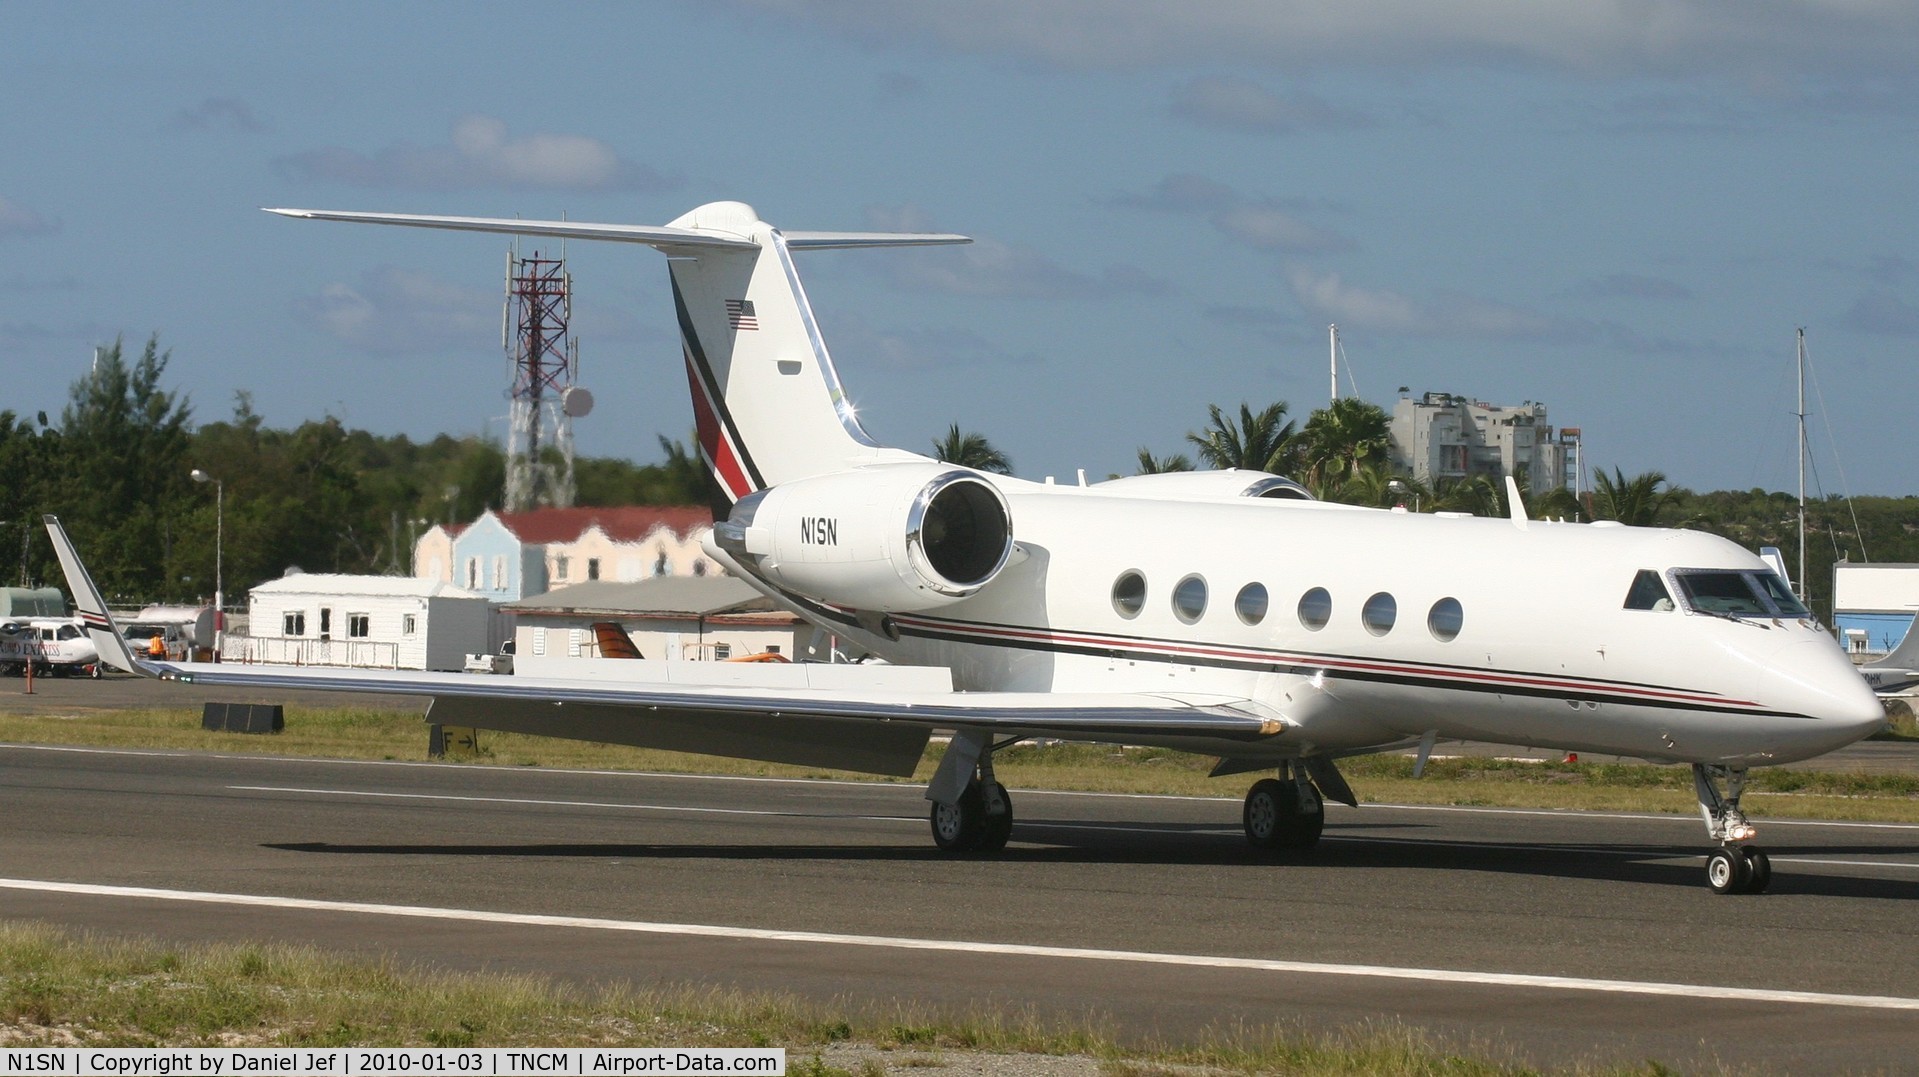 N1SN, 2000 Gulfstream Aerospace G-IV C/N 1433, N1SN just landed at TNCM